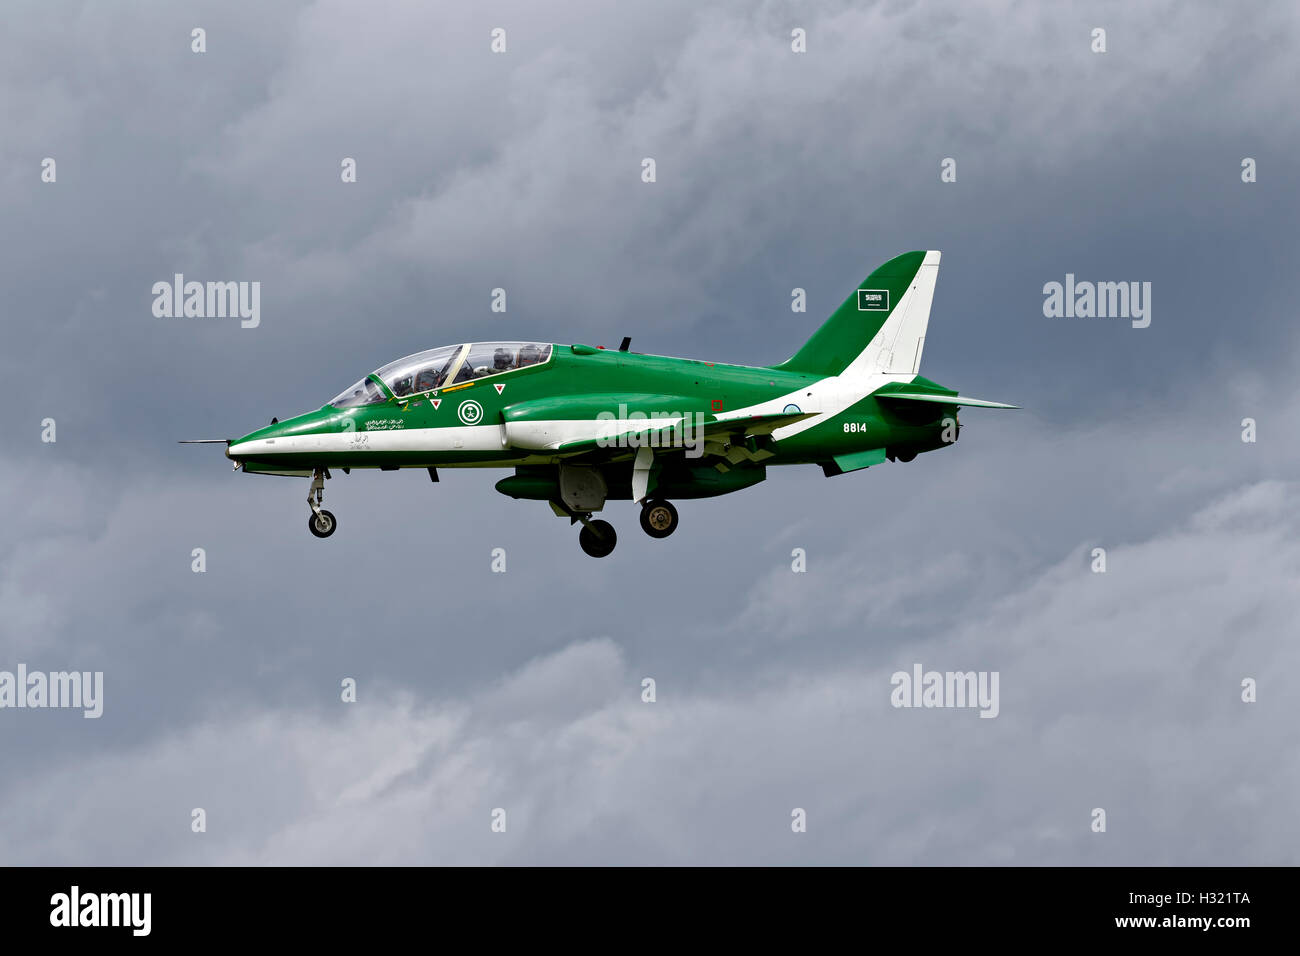 Hawk de BAe Systems une Mk65 de la Royal Saudi Air Force l'Équipe nationale de l'Arabie Hawks sur la finale pour atterrir à Yeovilton. Banque D'Images